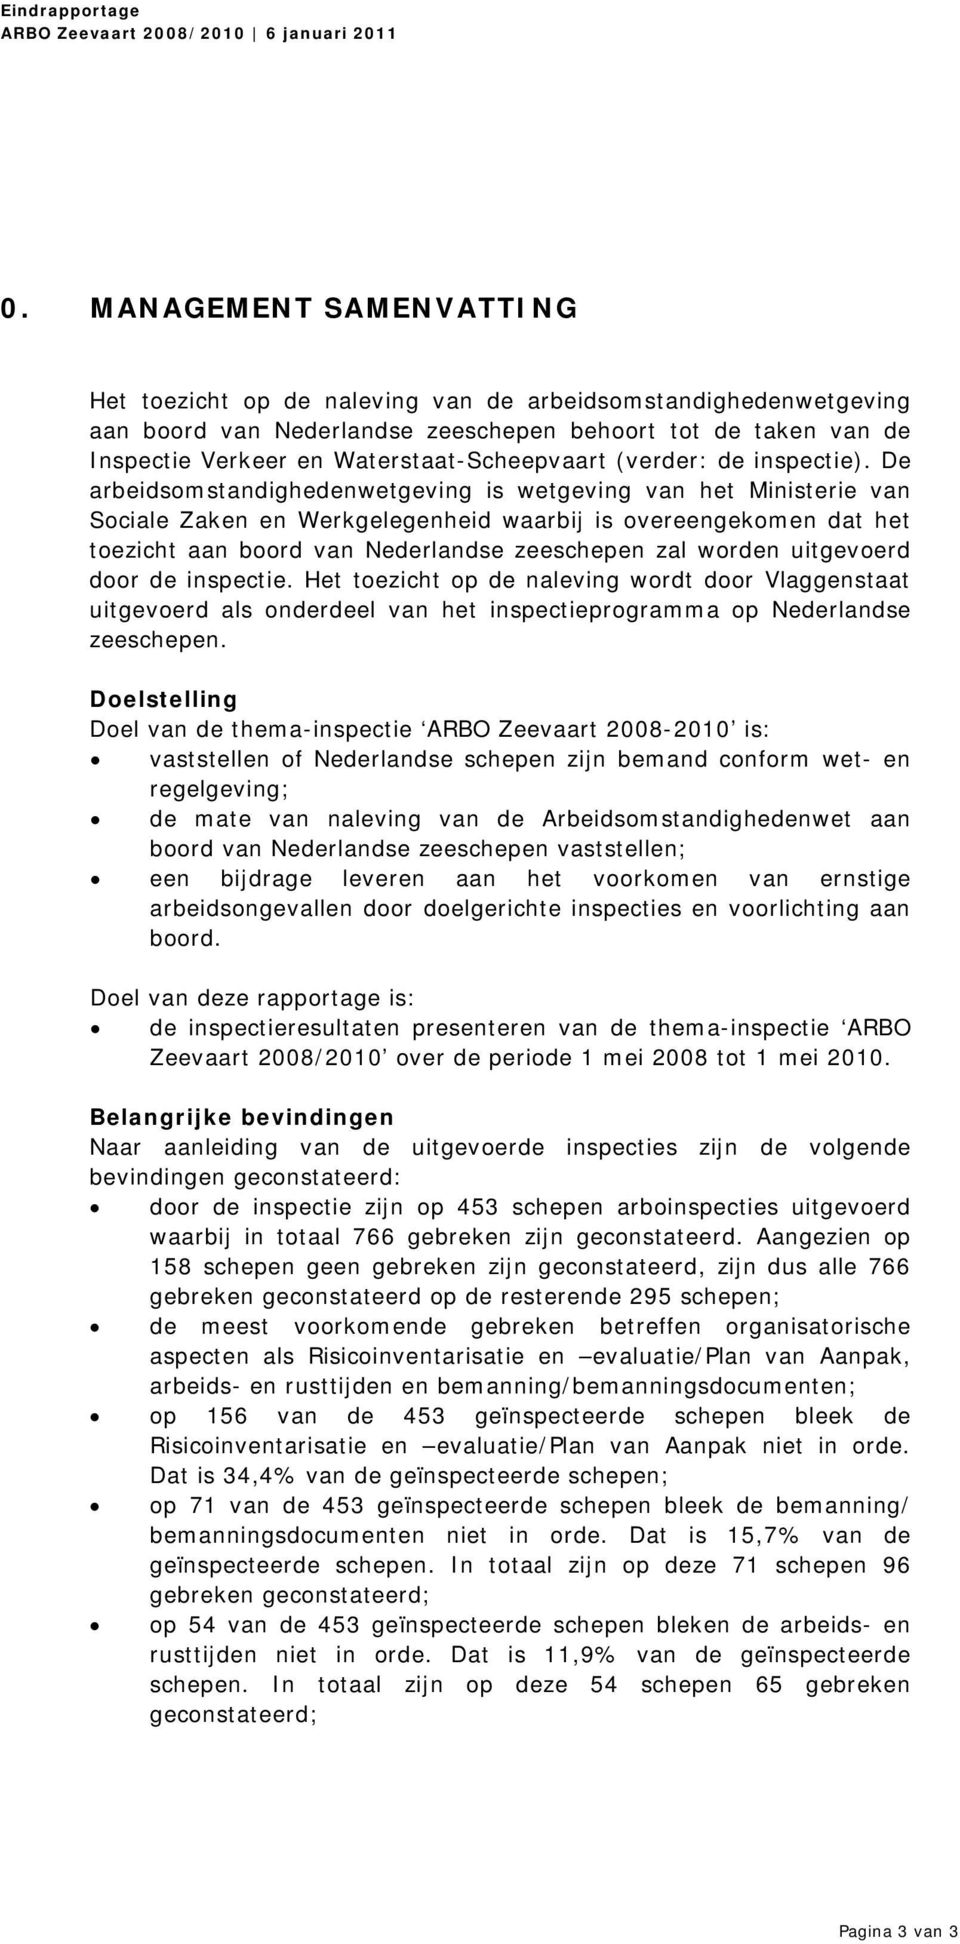 De arbeidsomstandighedenwetgeving is wetgeving van het Ministerie van Sociale Zaken en Werkgelegenheid waarbij is overeengekomen dat het toezicht aan boord van Nederlandse zeeschepen zal worden